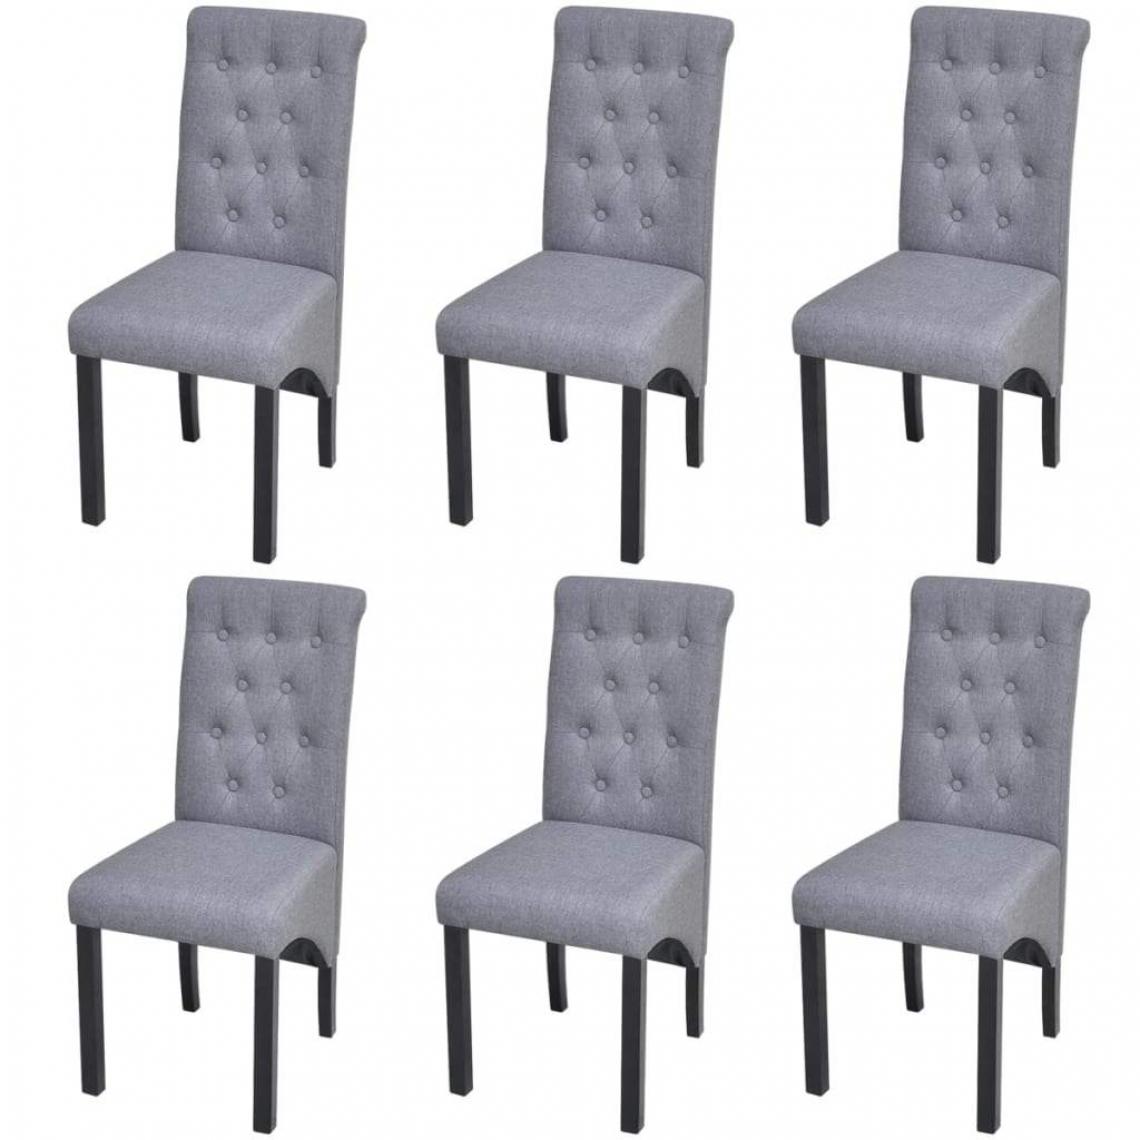 Decoshop26 - Lot de 6 chaises de salle à manger cuisine design classique tissu gris clair CDS022417 - Chaises